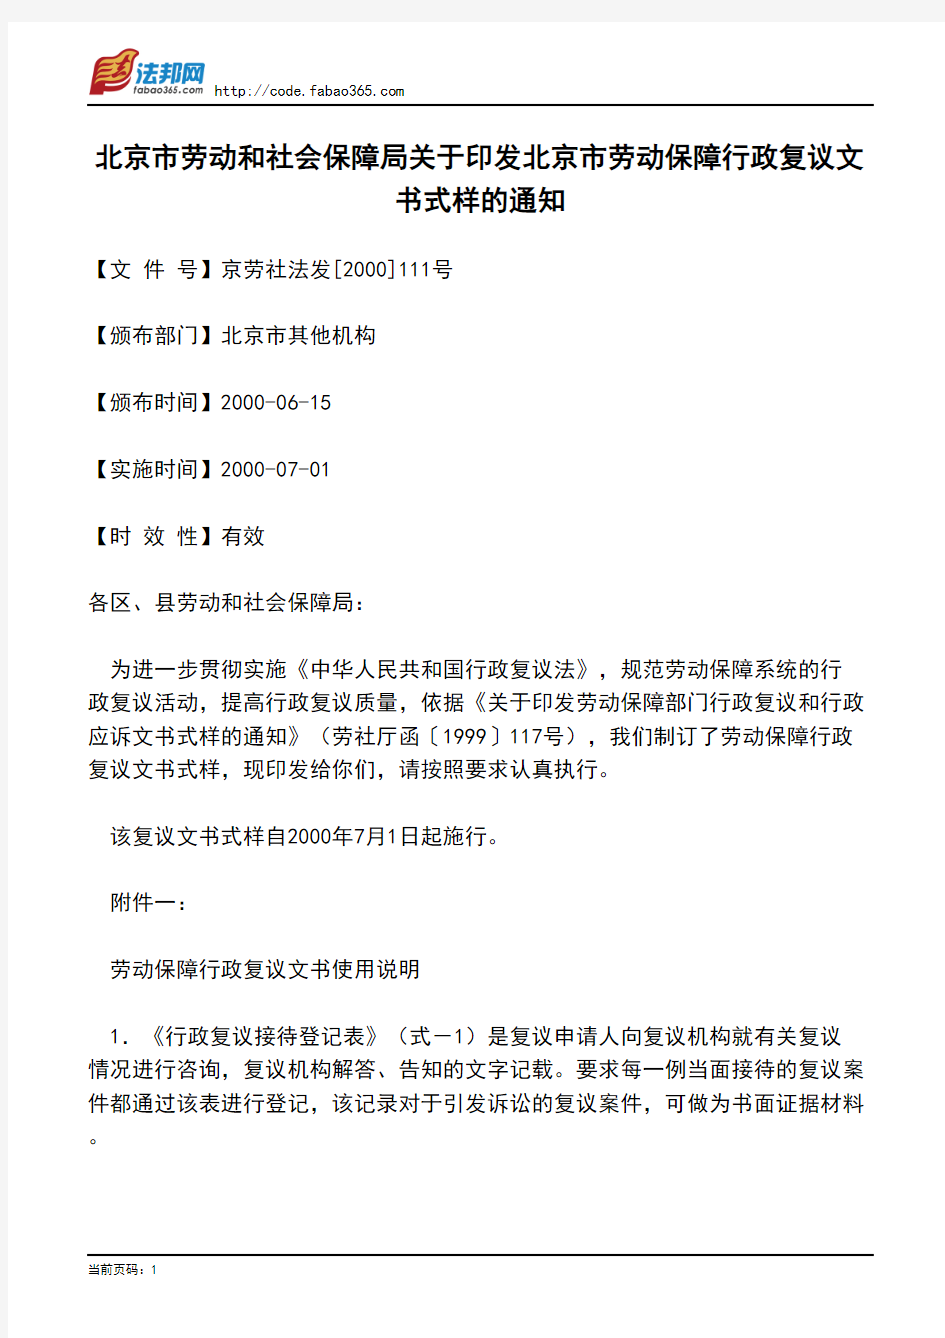 北京市劳动和社会保障局关于印发北京市劳动保障行政复议文书式样的通知